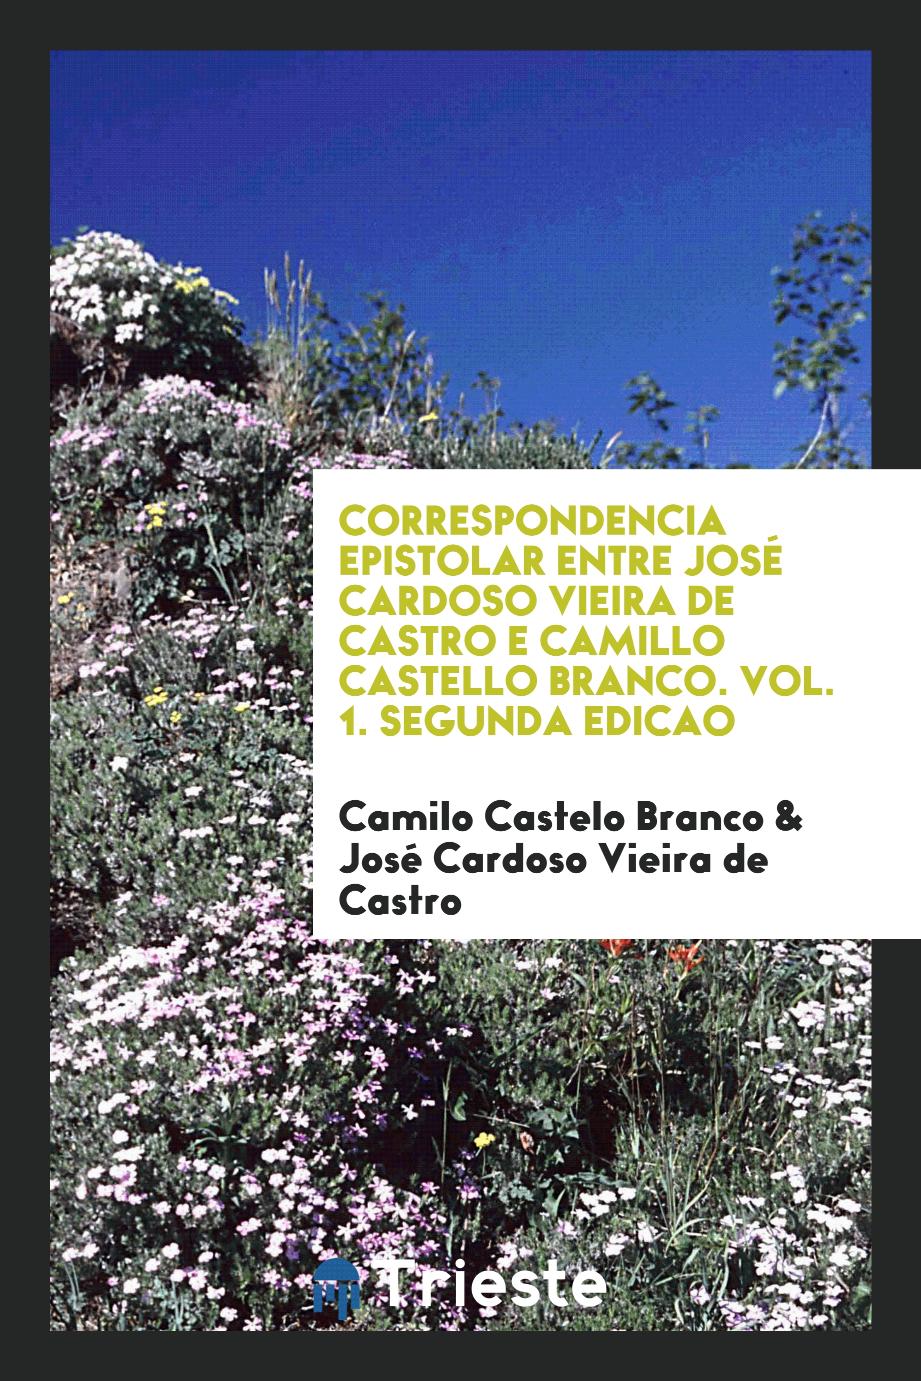 Correspondencia epistolar entre José Cardoso Vieira de Castro e Camillo Castello Branco. Vol. 1. Segunda edicao